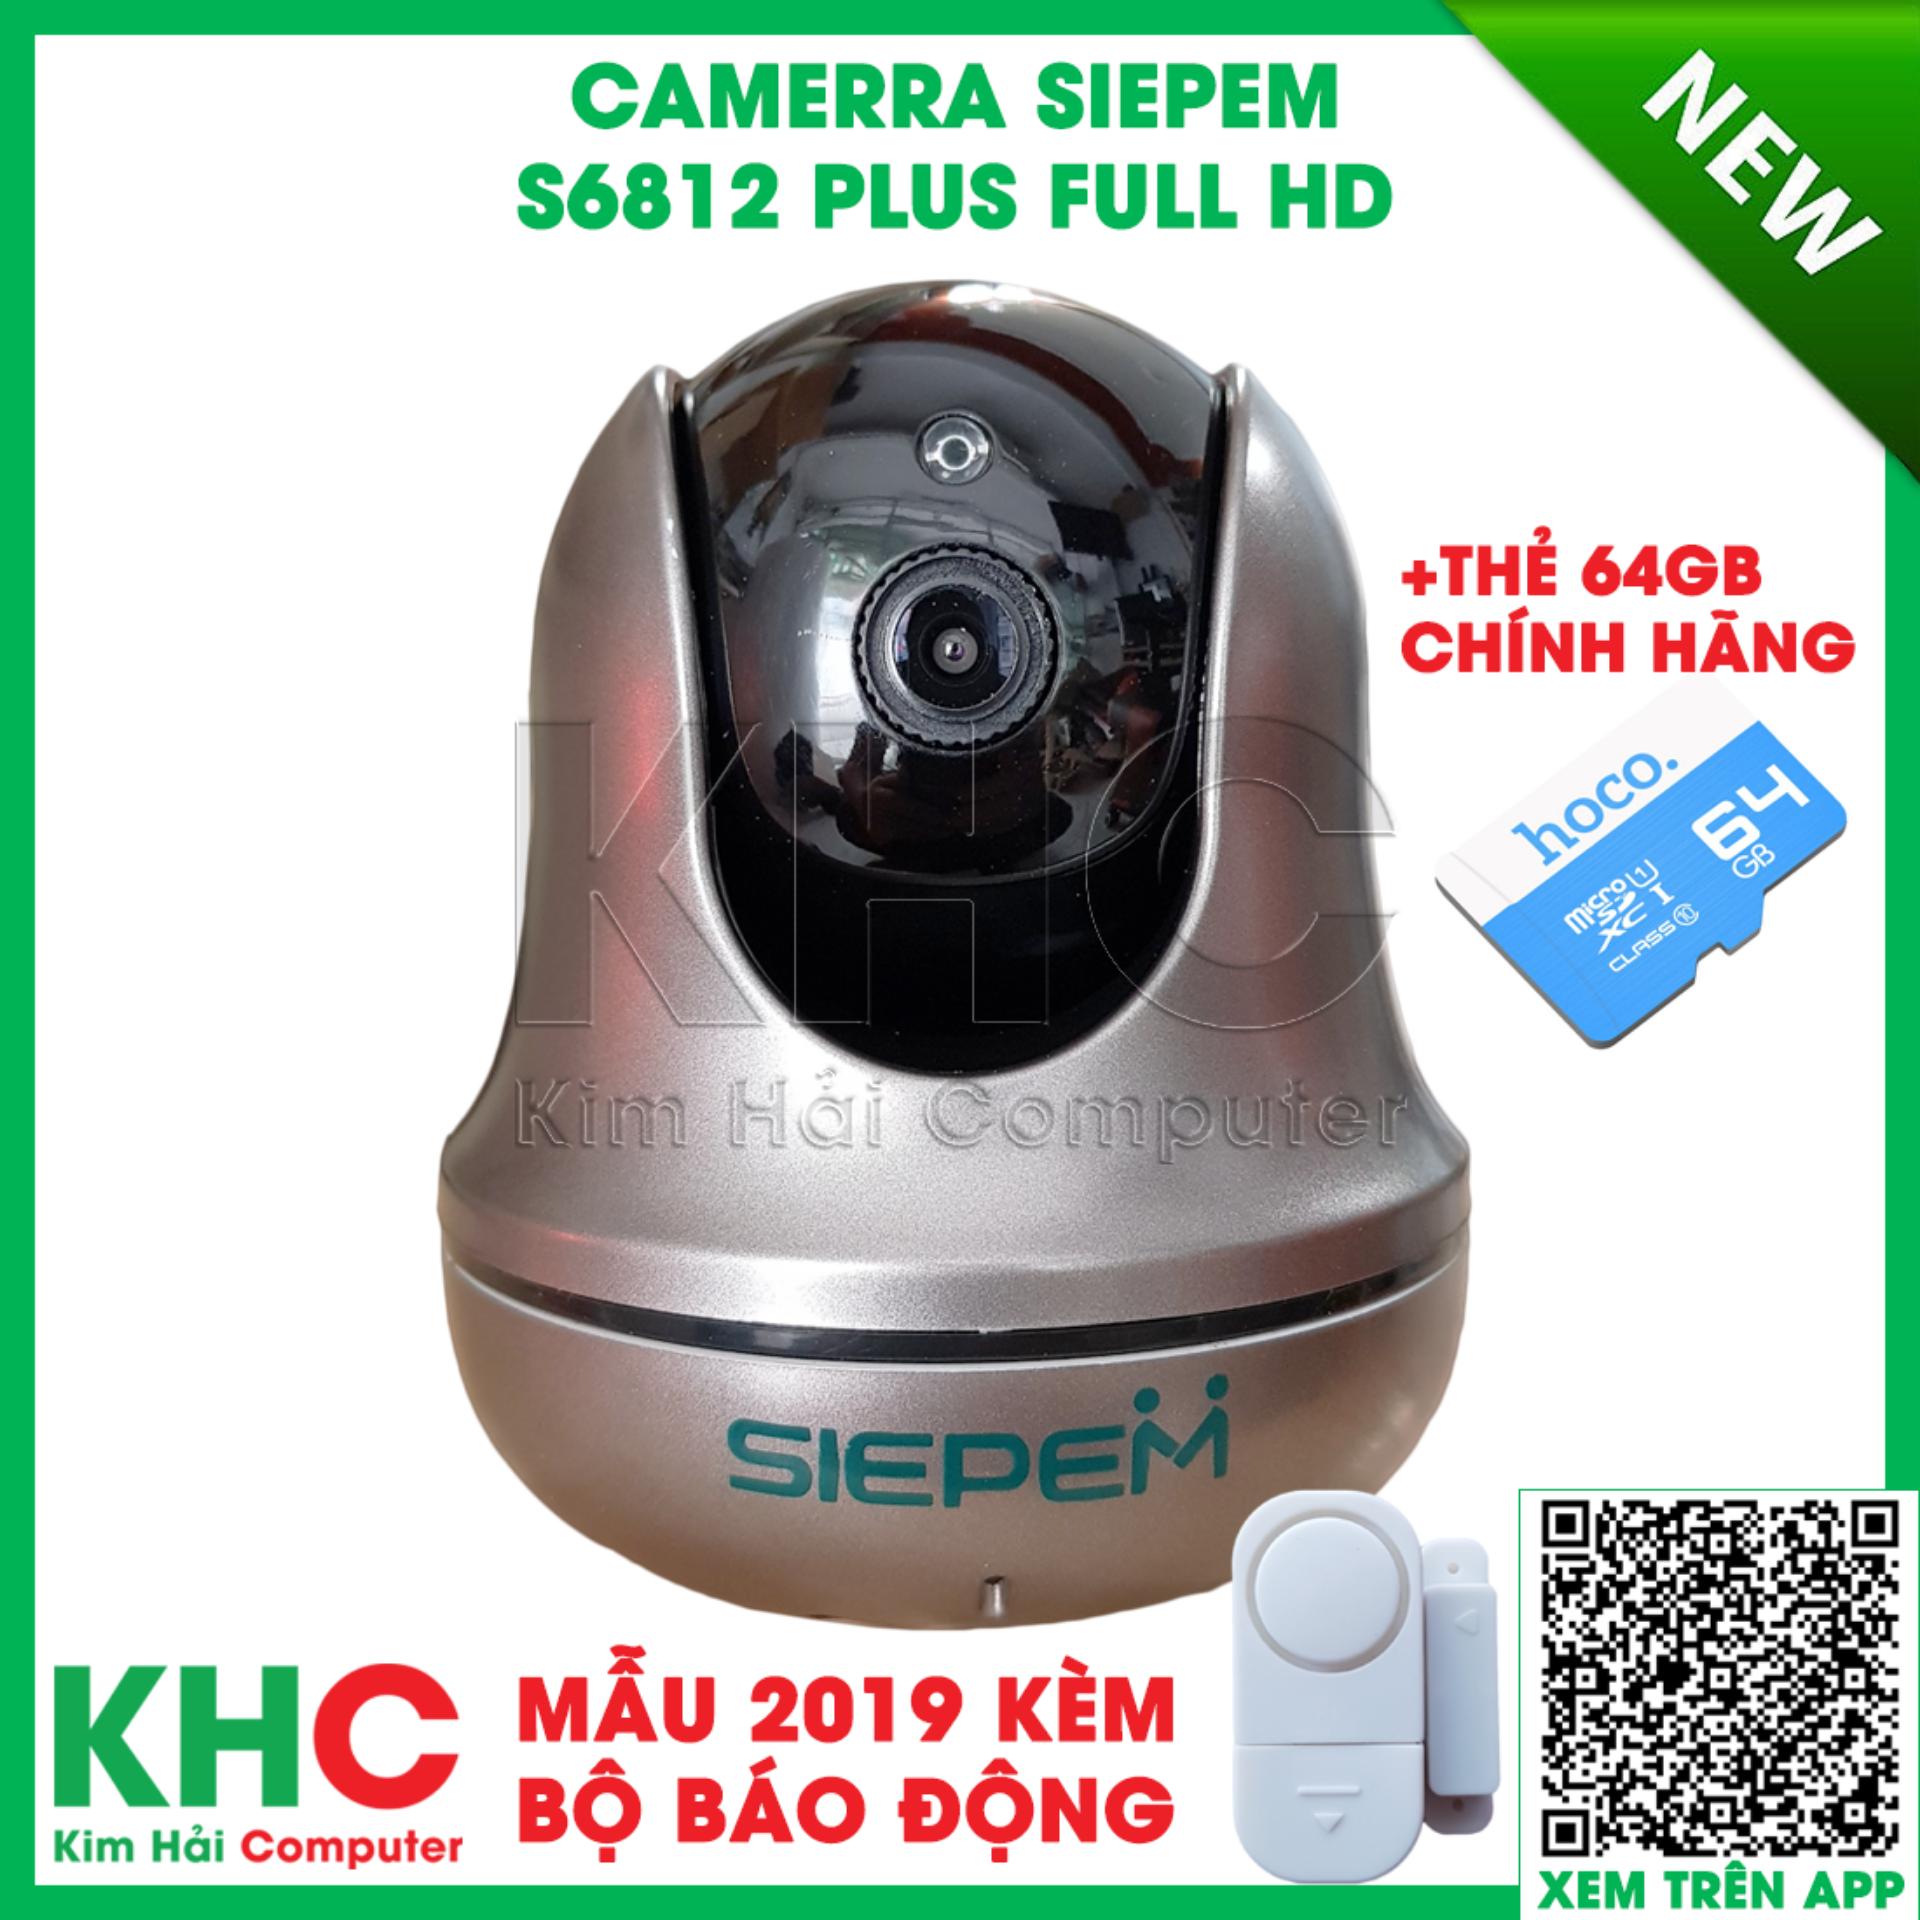 Mẫu 2019 - Tiếng Việt - Siepem S6812 Plus + Thẻ 64GB + Bộ báo động ...